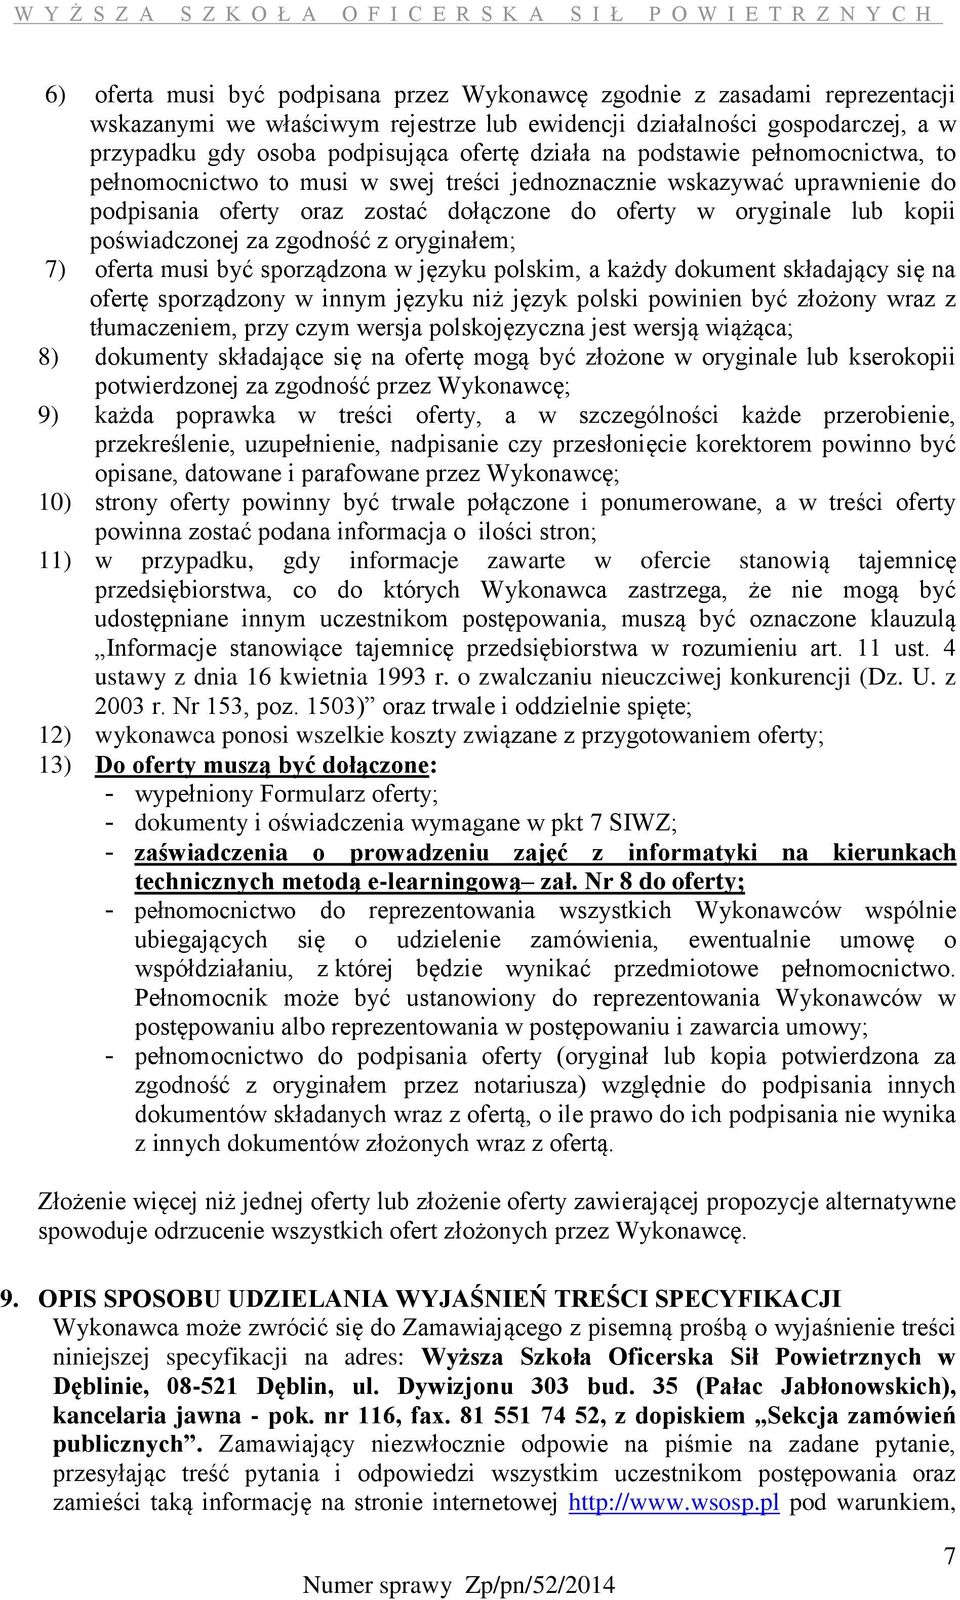 poświadczonej za zgodność z oryginałem; 7) oferta musi być sporządzona w języku polskim, a każdy dokument składający się na ofertę sporządzony w innym języku niż język polski powinien być złożony